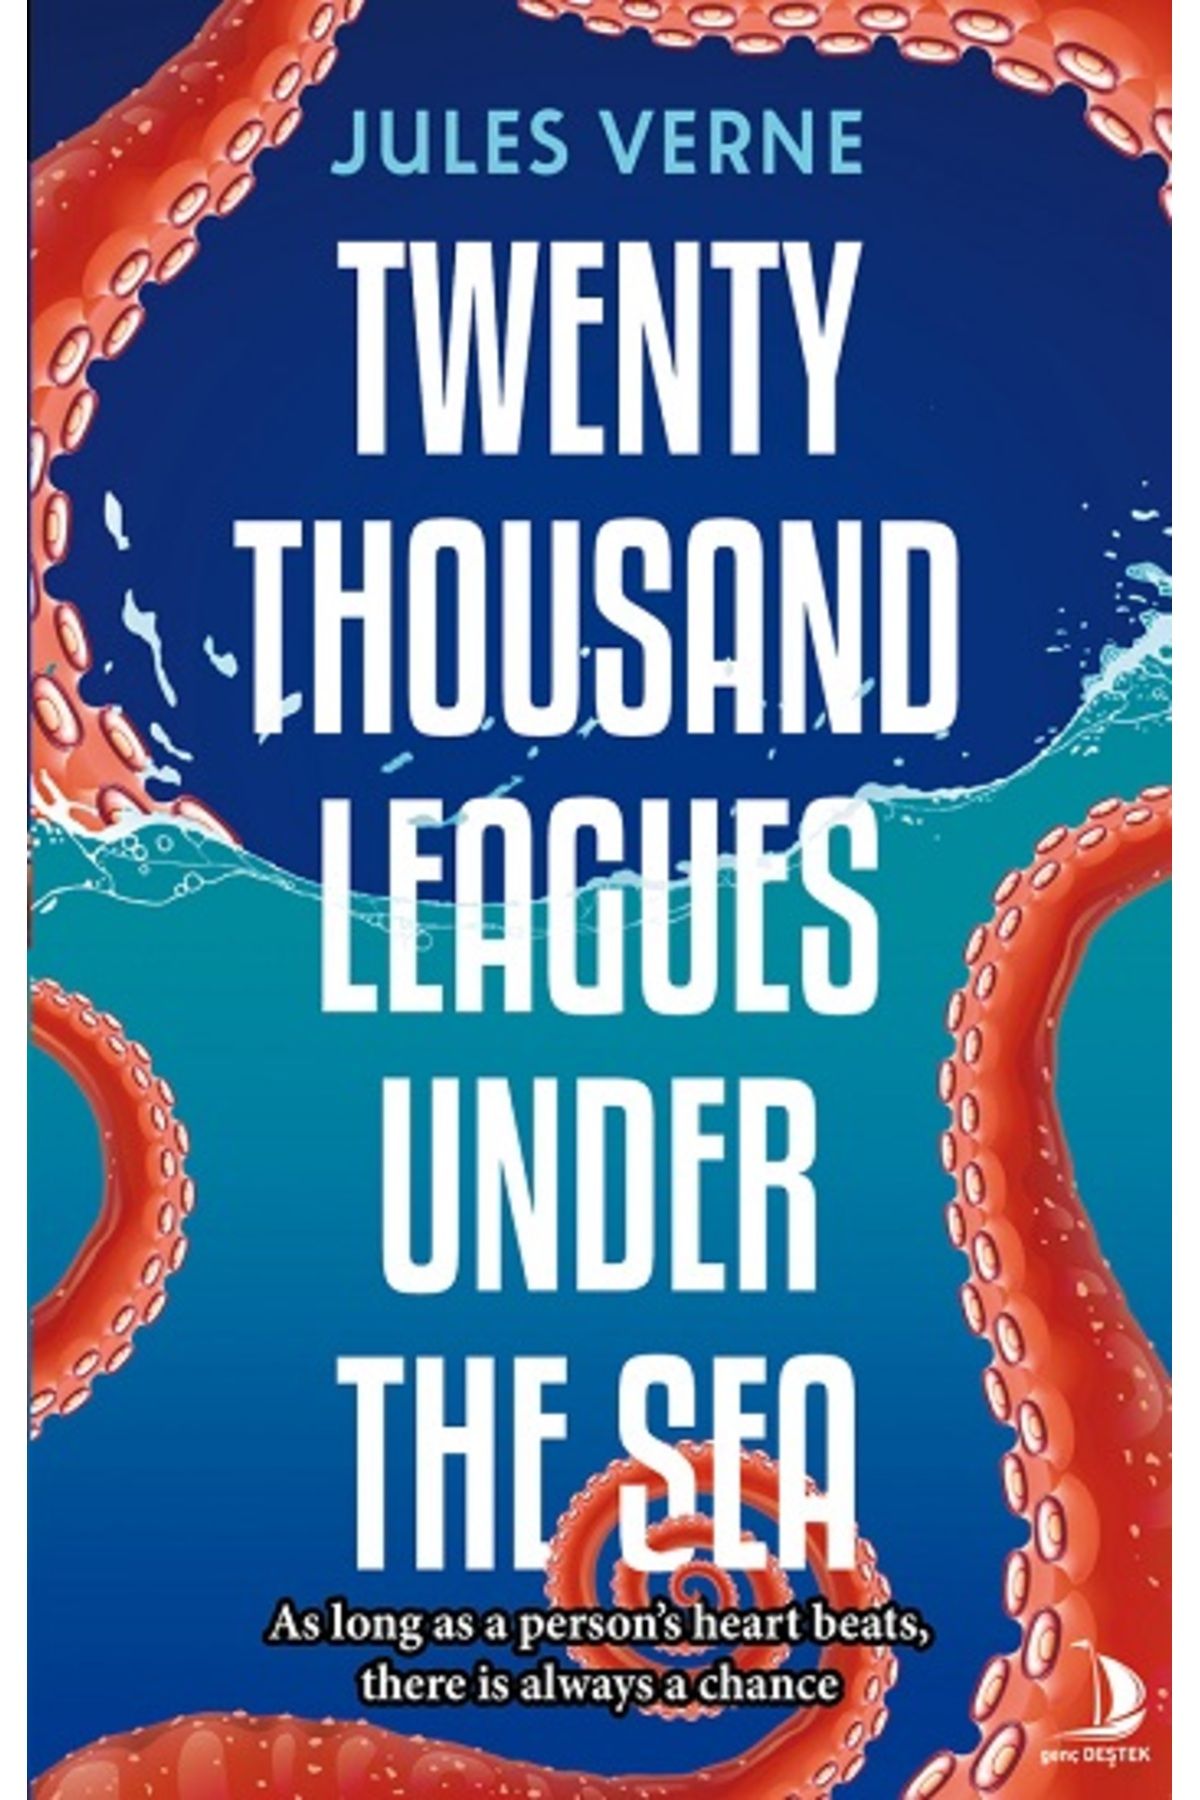 Destek Yayınları Twenty Thousand Leagues Under The Sea